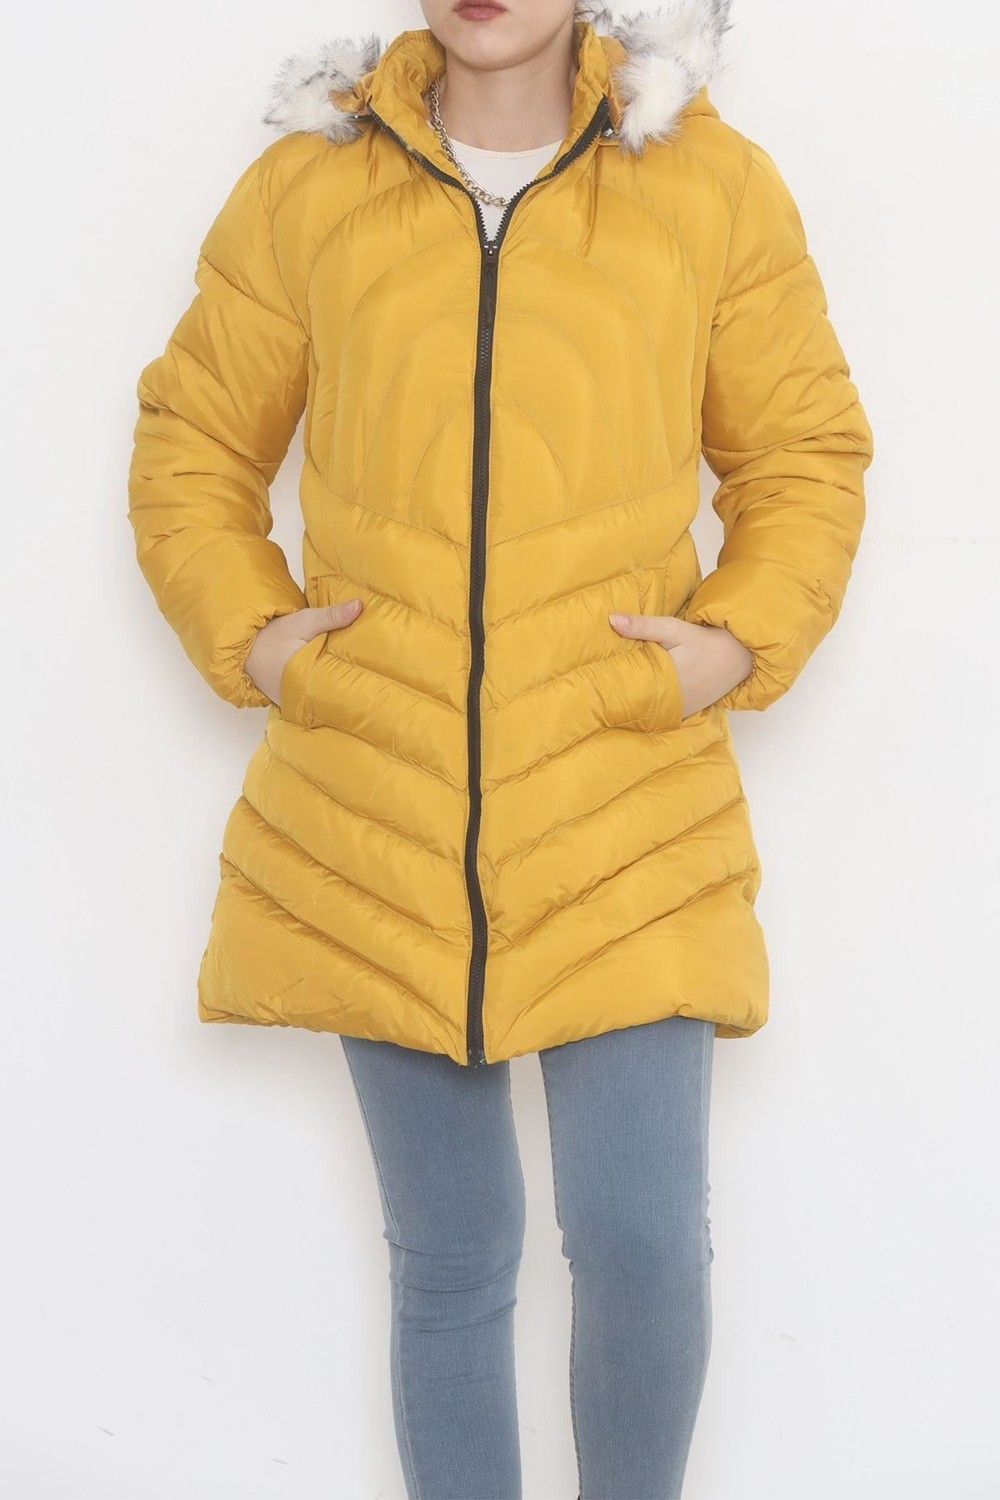 Пальто с капюшоном из меха цвета горчицы - 5129.1555.